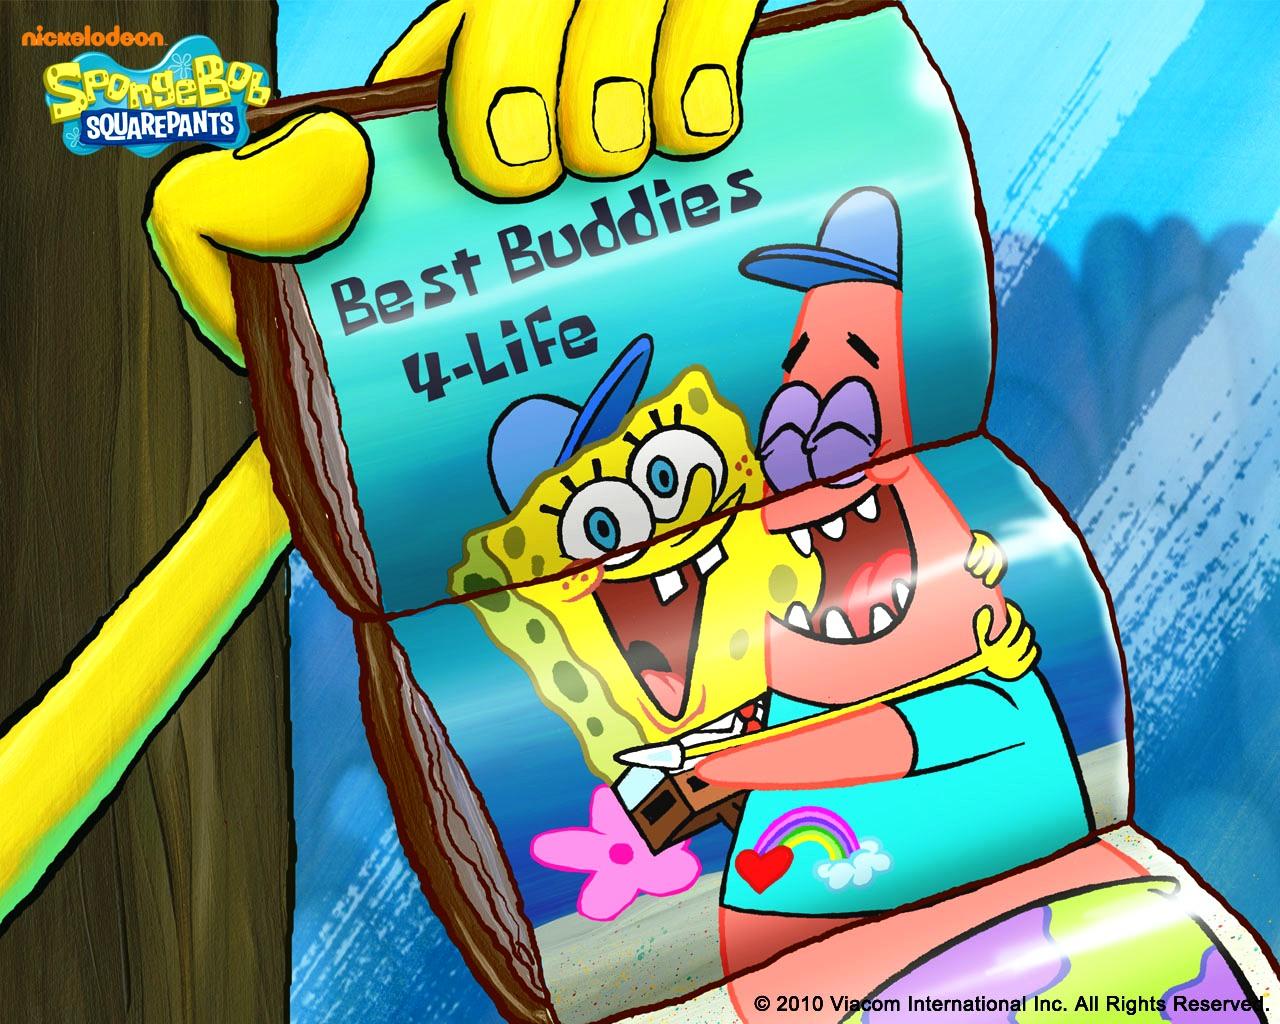 Of Spongebob Squarepants HD Image Wallpaper for iPhone 1280x1024